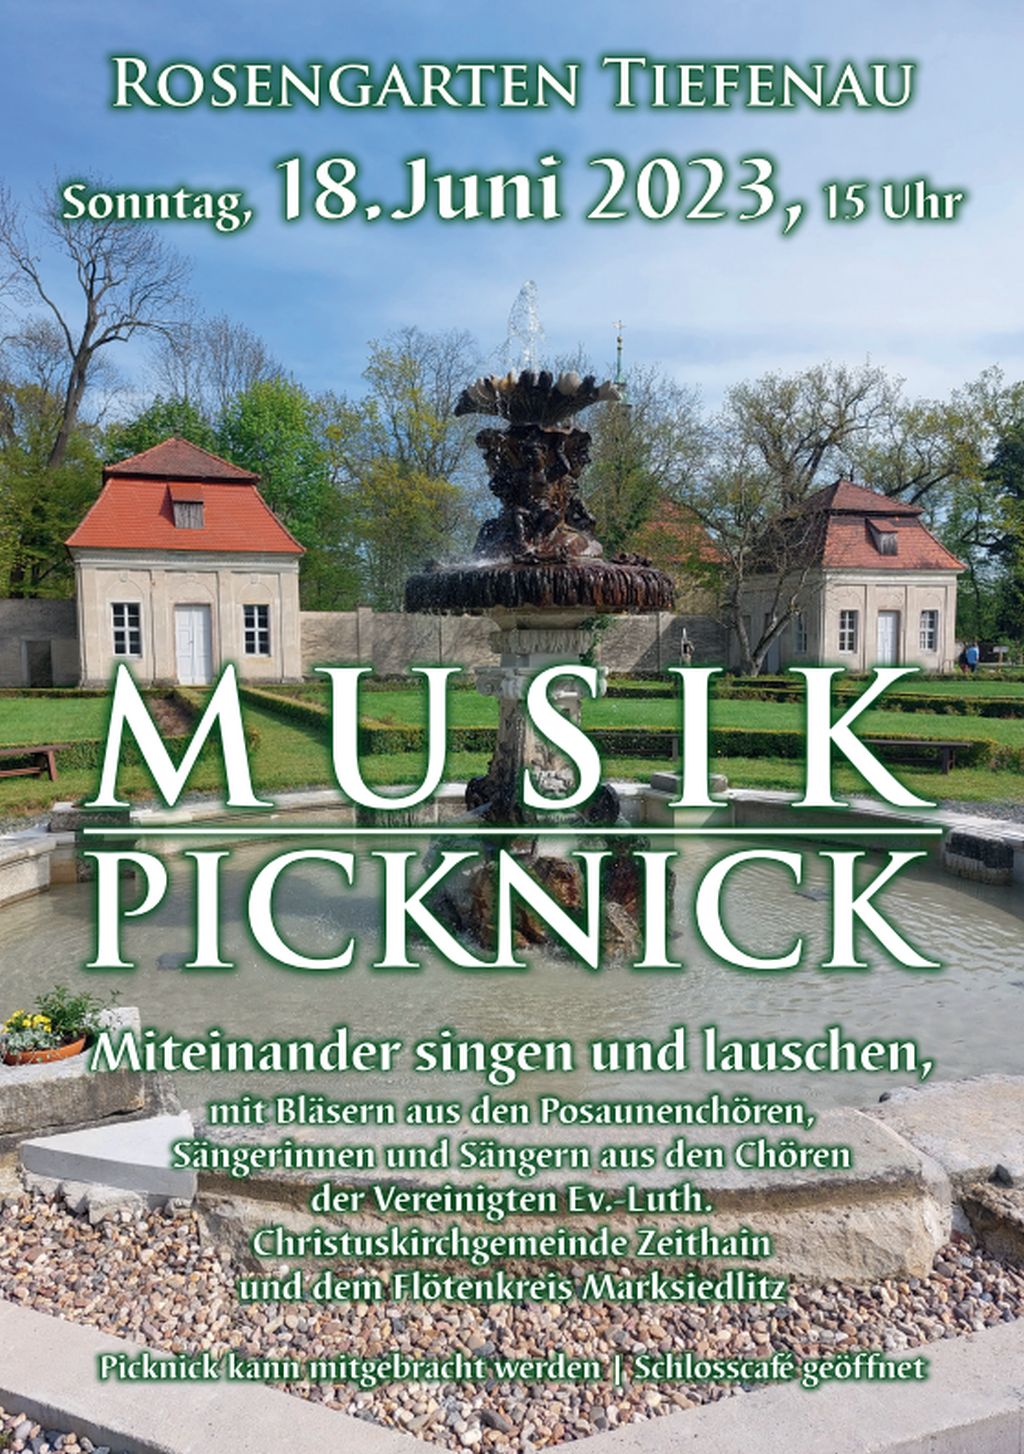 Musikpicknick am 18.06. in Tiefenau